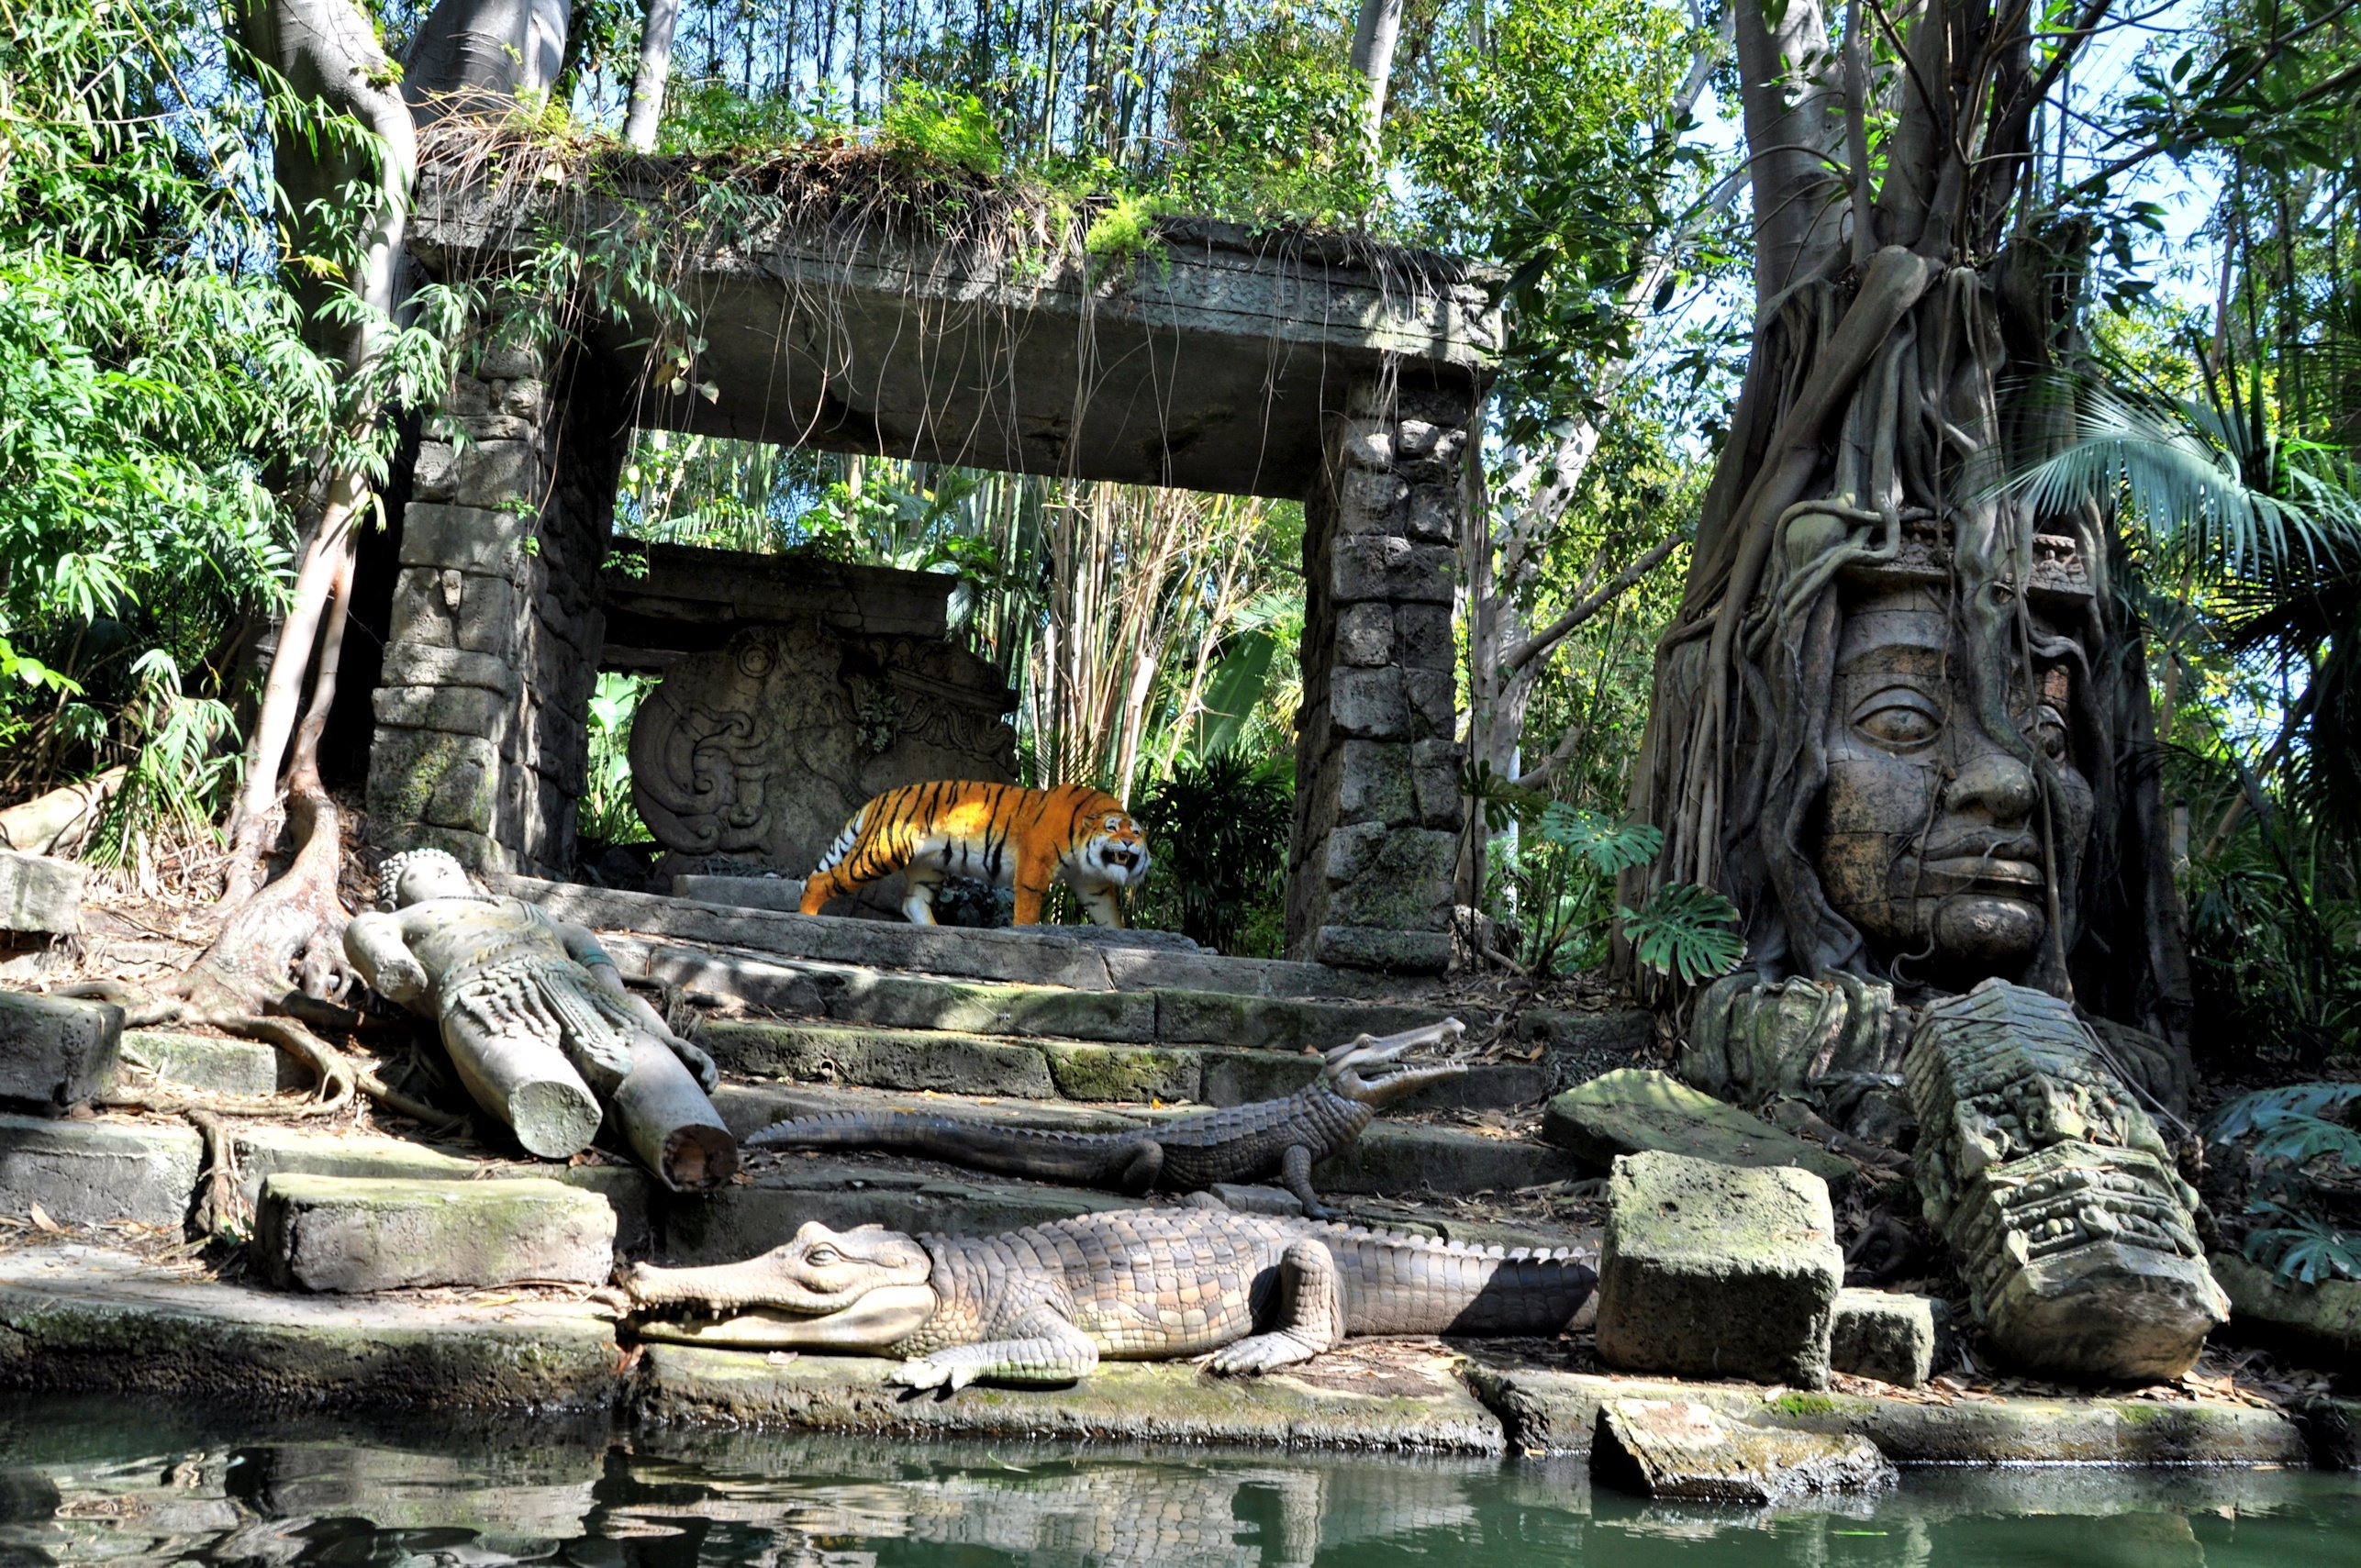 Затерянный в джунглях. Камбоджа храмы в джунглях. Джунгли Камбоджи храм Ангкор. Затерянный храм в джунглях Индии. Заброшенные храмы Индии в джунглях.